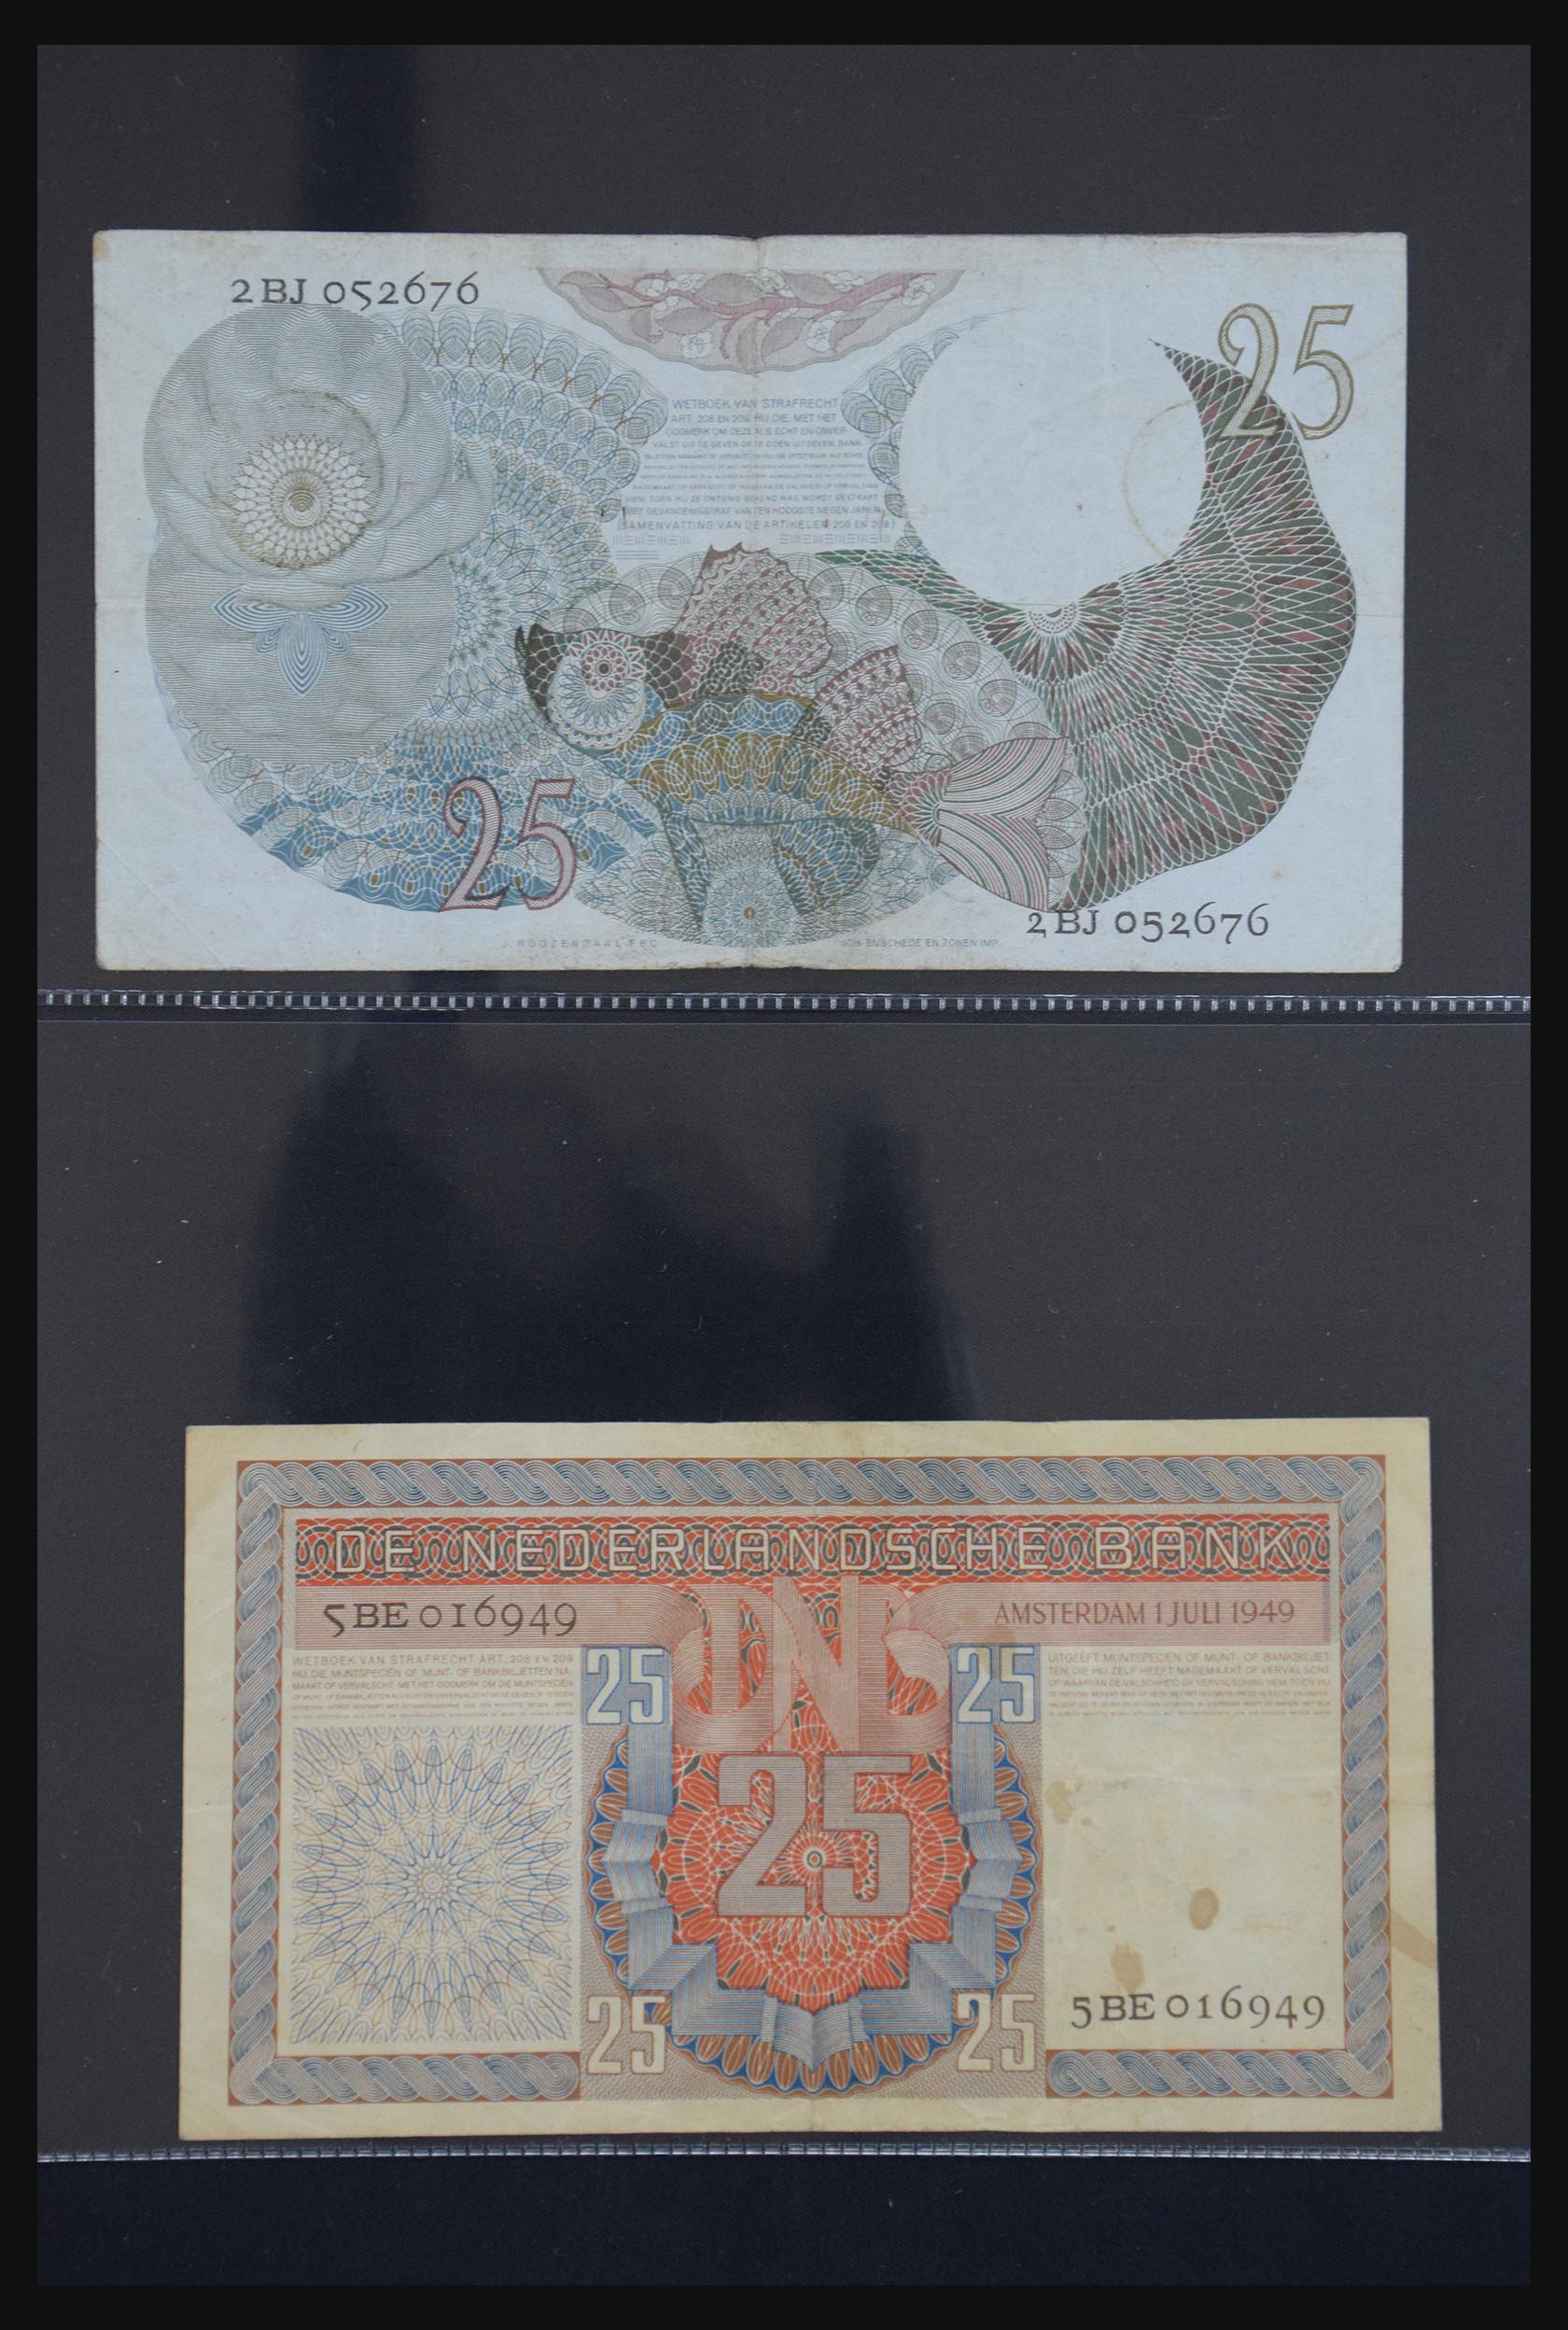 29404 032 - 29404 Netherlands banknotes 1924-1997.